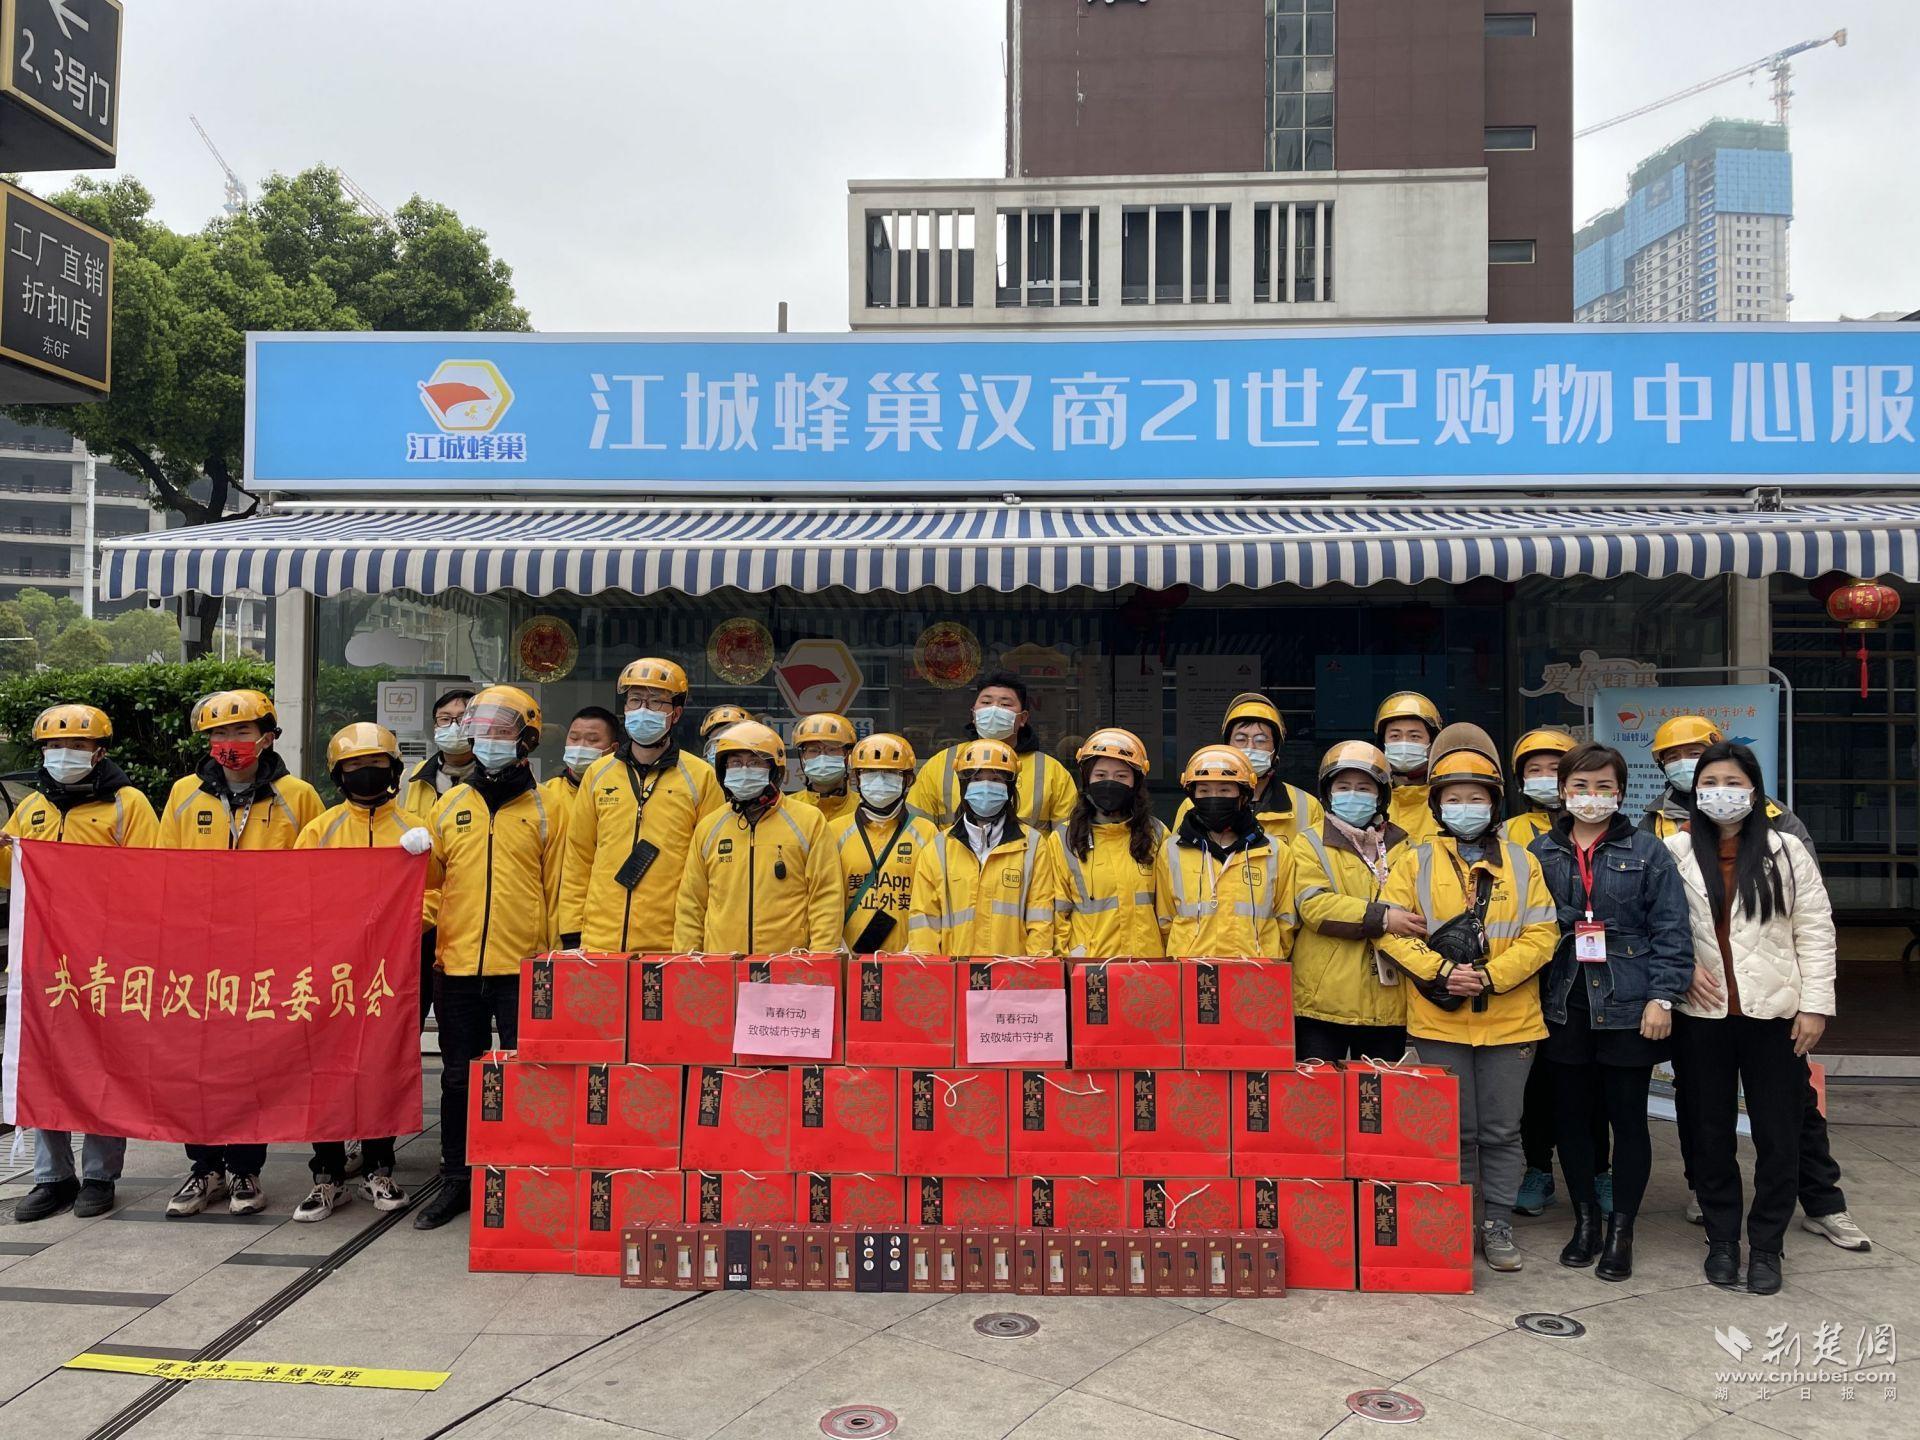 汉阳琴断口街慰问新兴领域青年 25名快递员“签收”美好生活